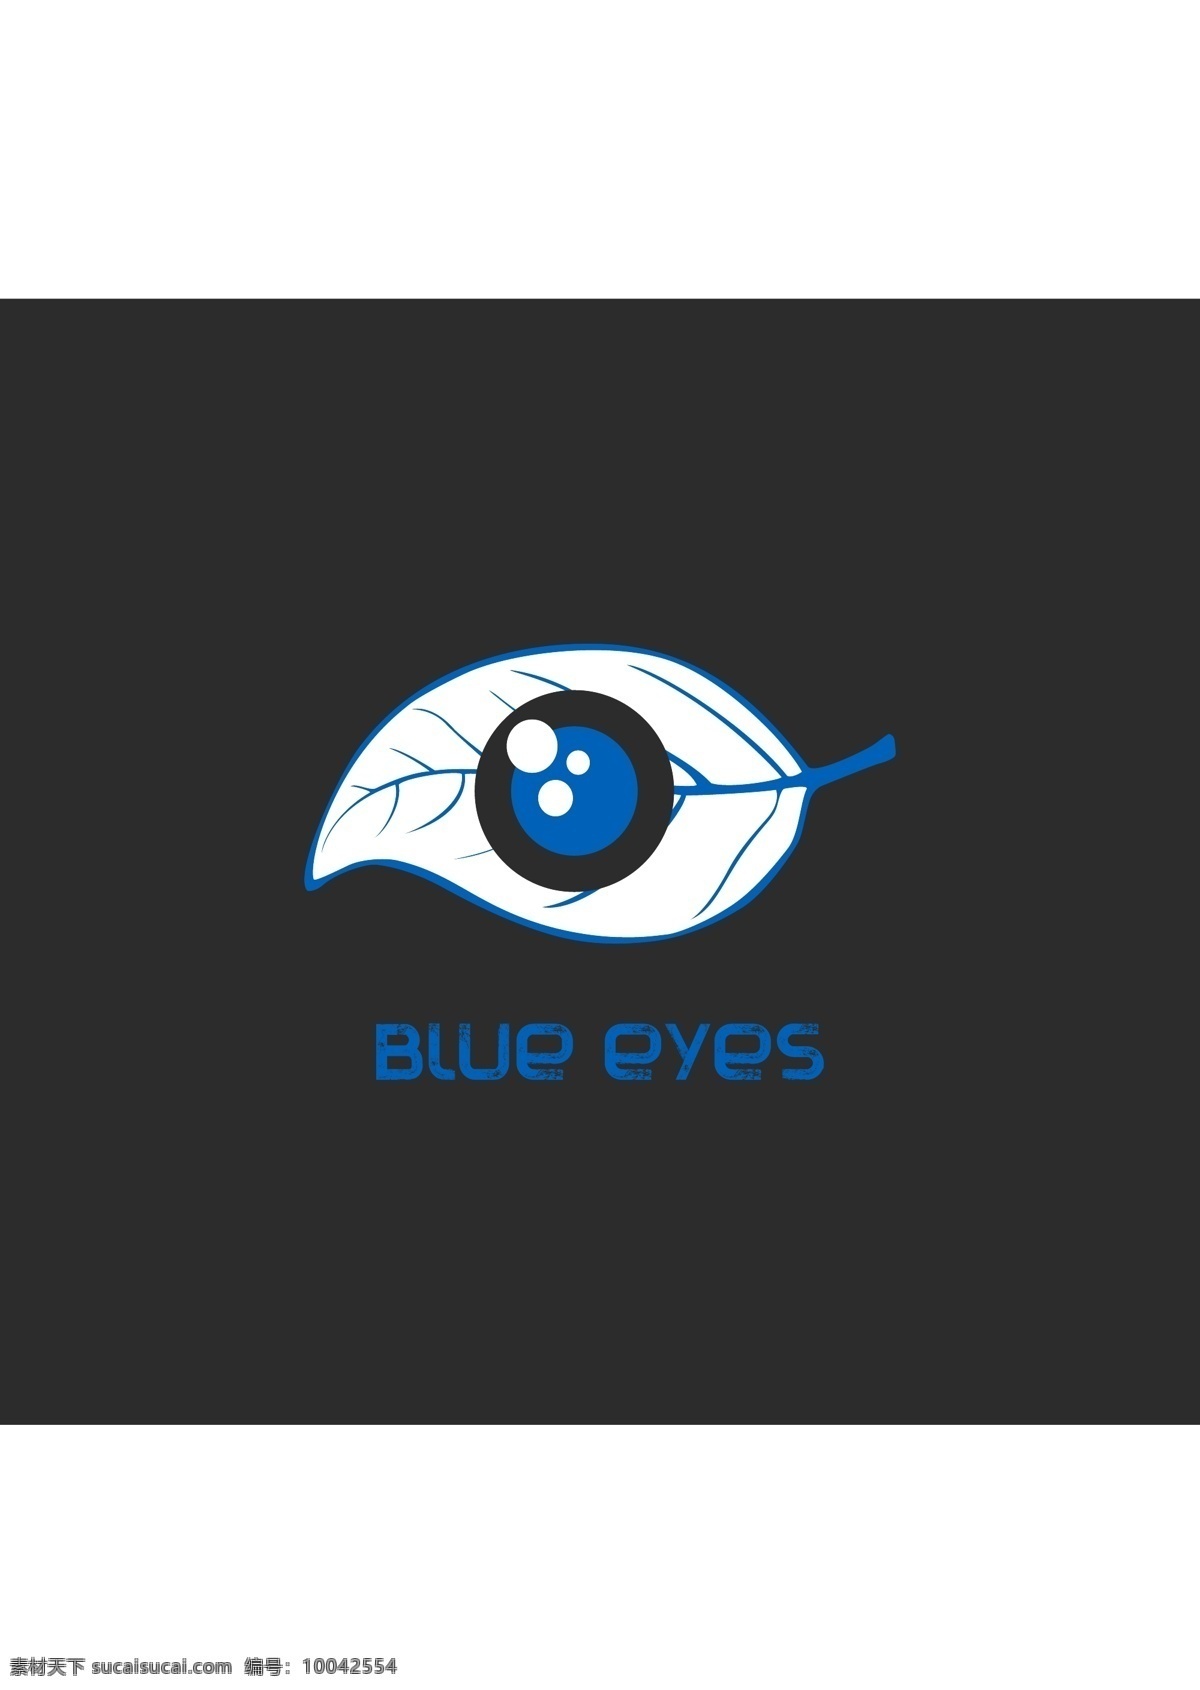 蓝 眼睛 logo logo设计 保护环境 蓝色 图形创意 叶子 感受 大自然 原创设计 其他原创设计